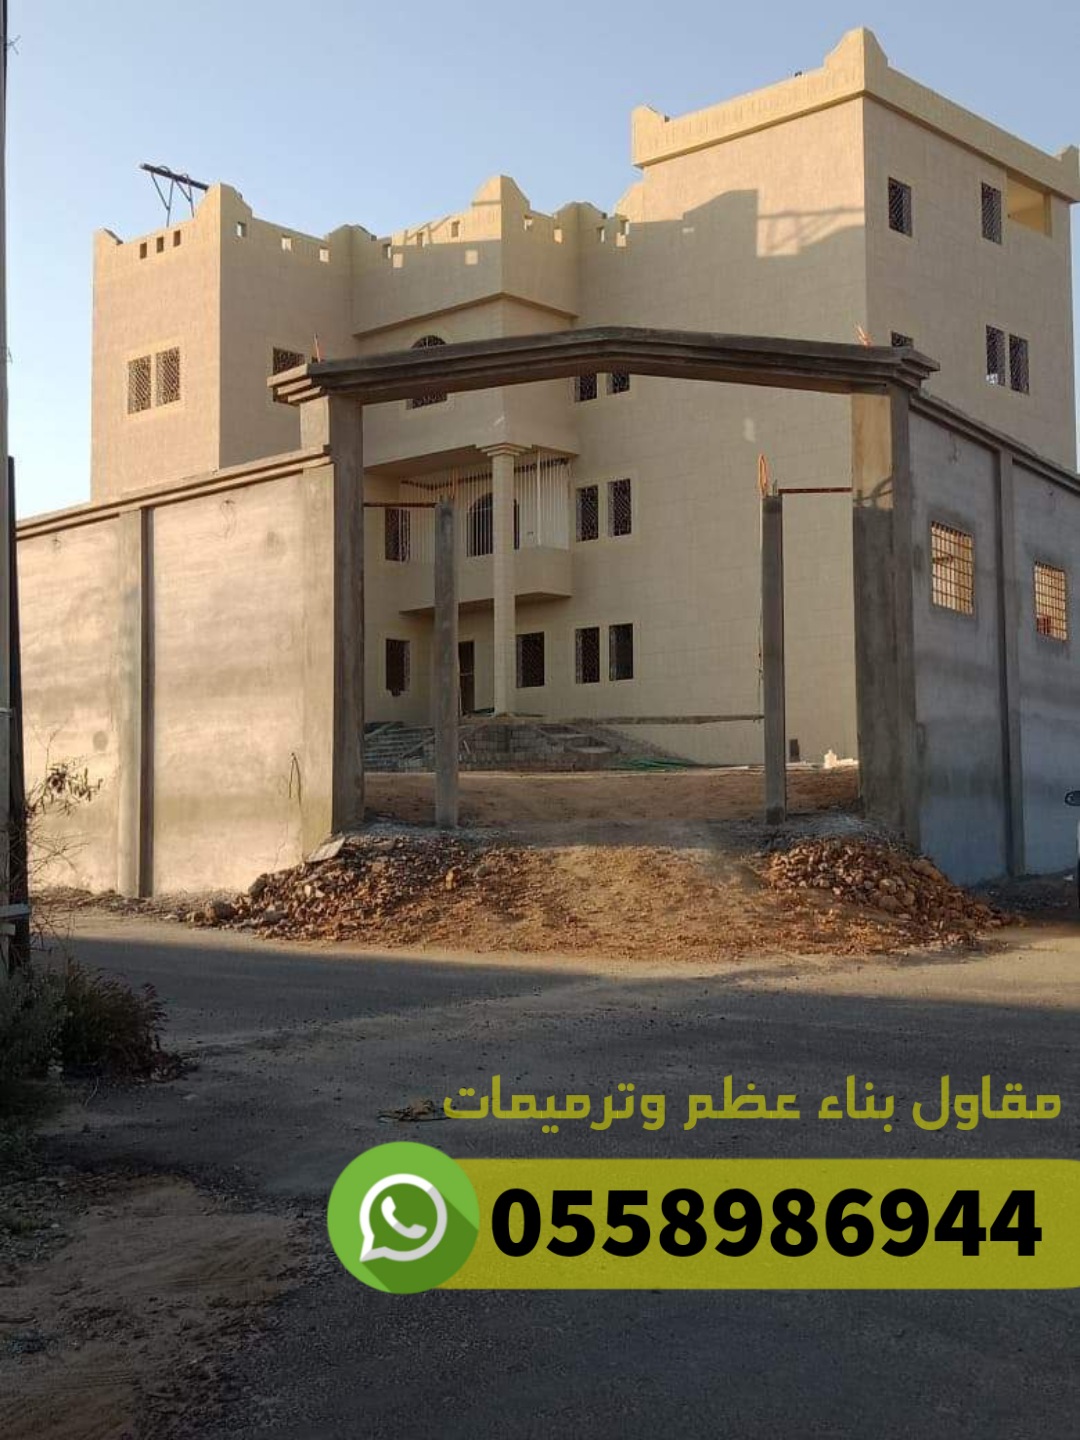 مقاول كنبليت وعظم مباني ومصنعية في جدة, 0558986944